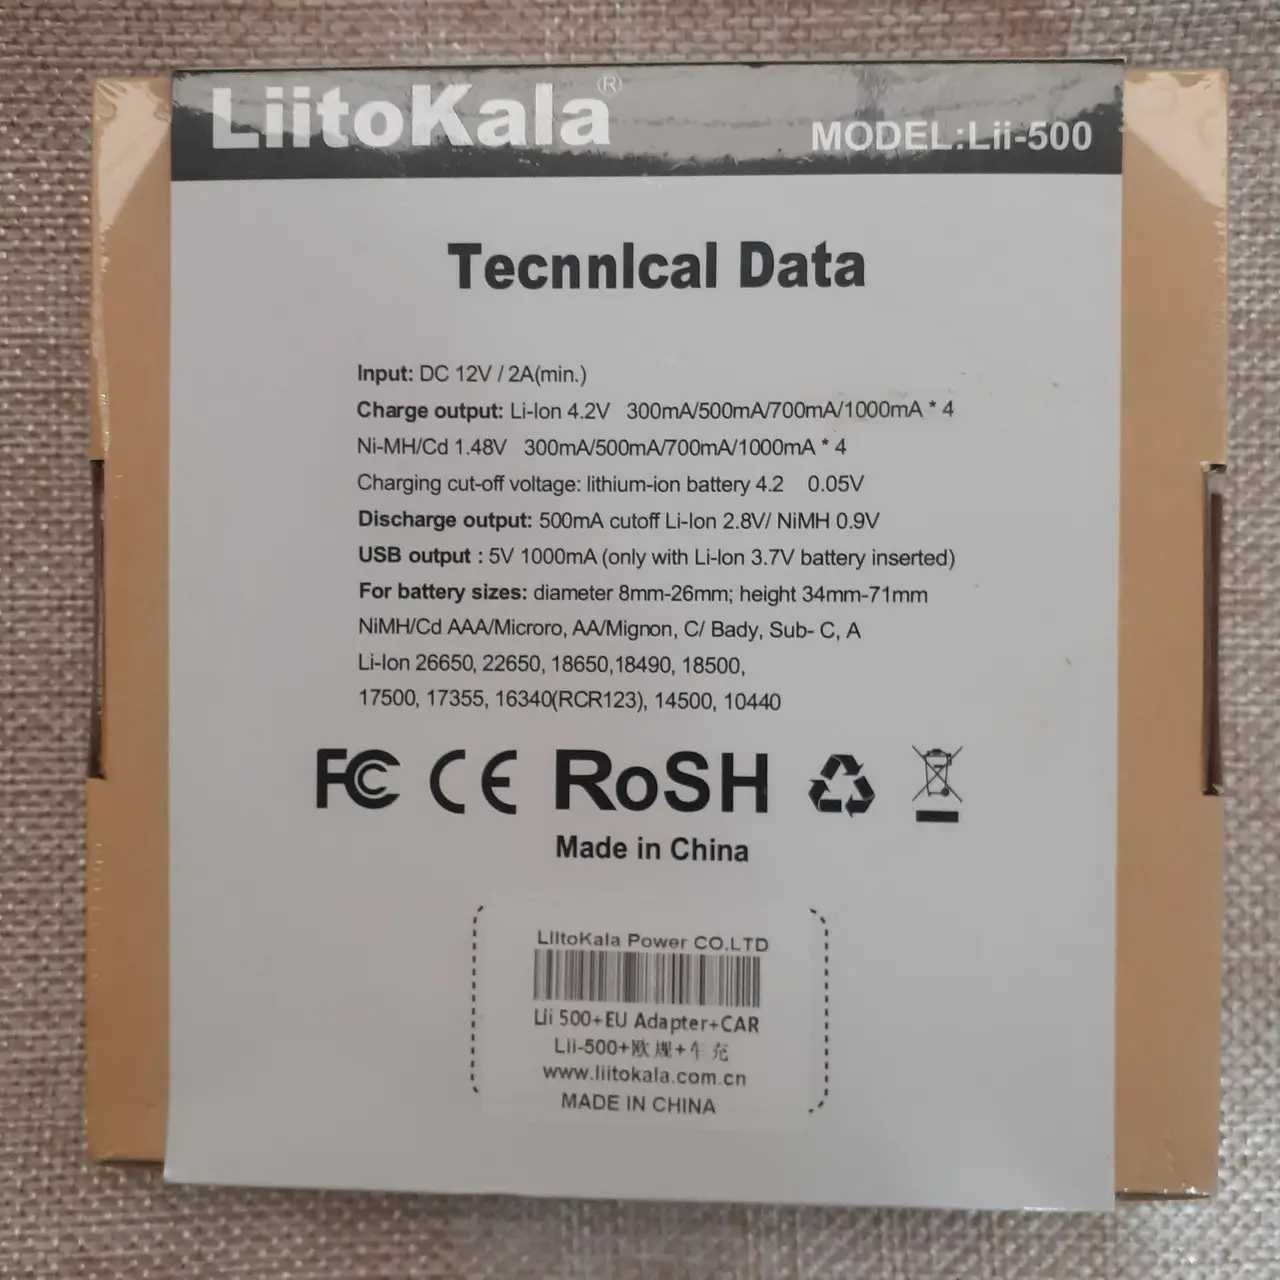 Зарядное устройство LiitoKala lii-500, литокала. Полный комплект